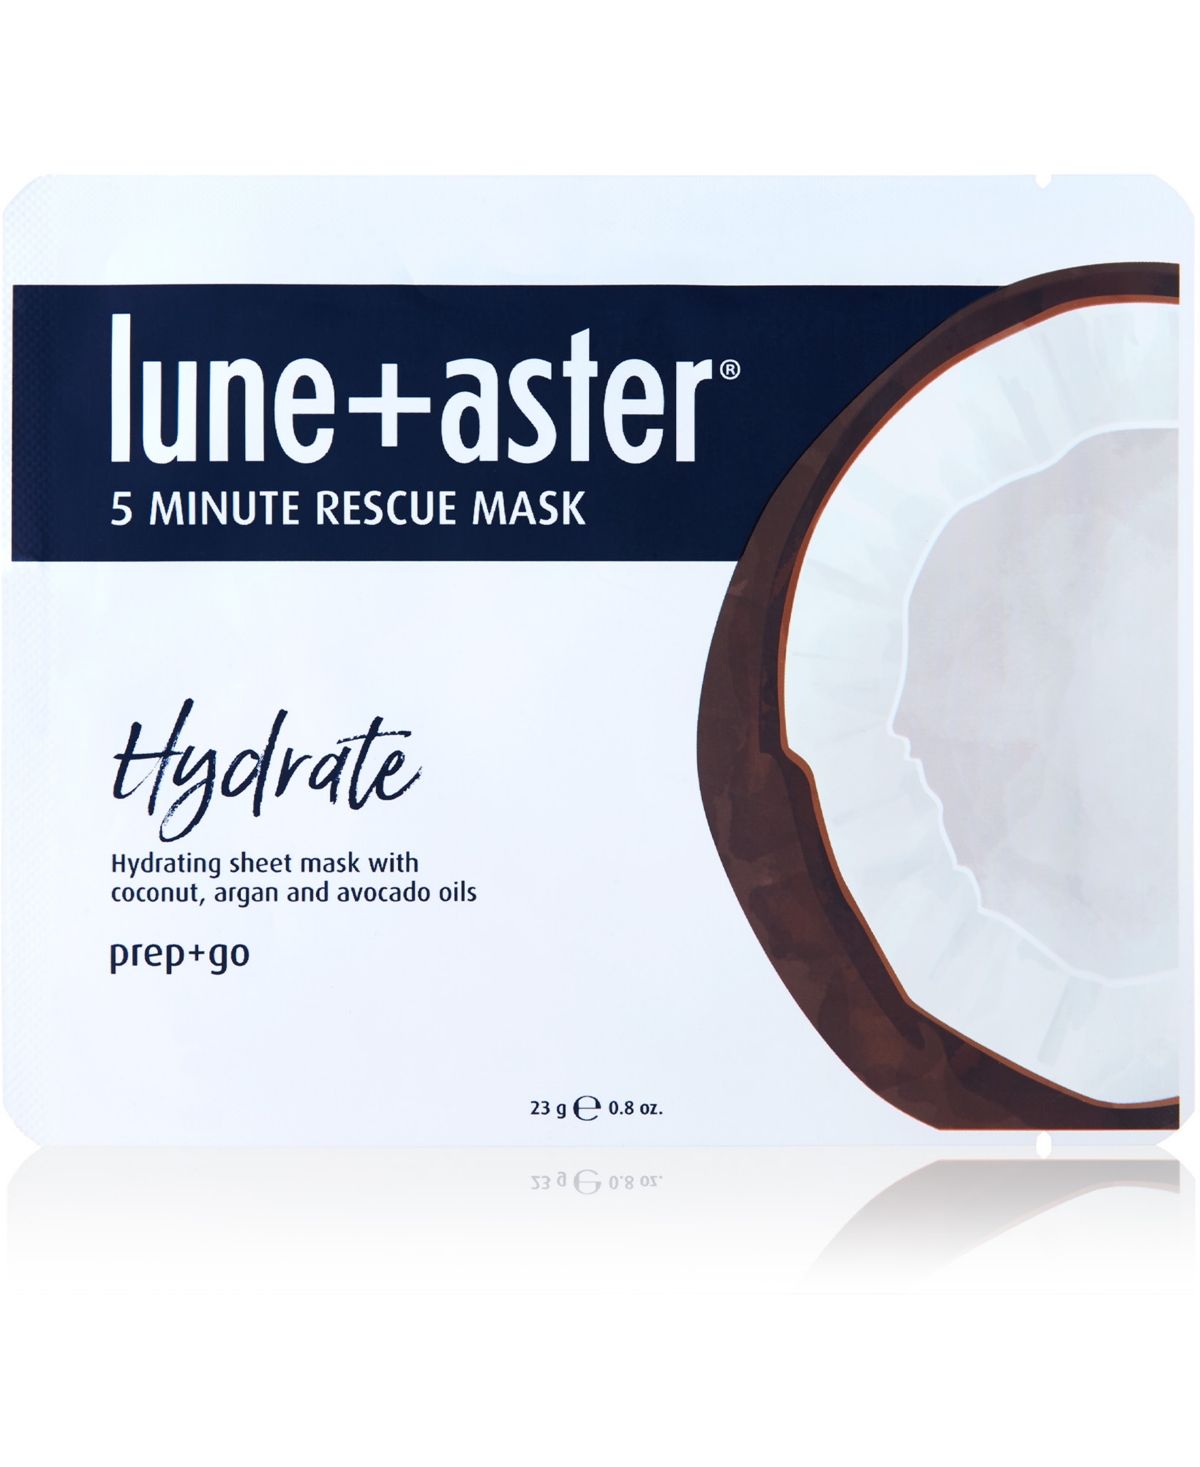 5 Minute Rescue Mask - Hydrate